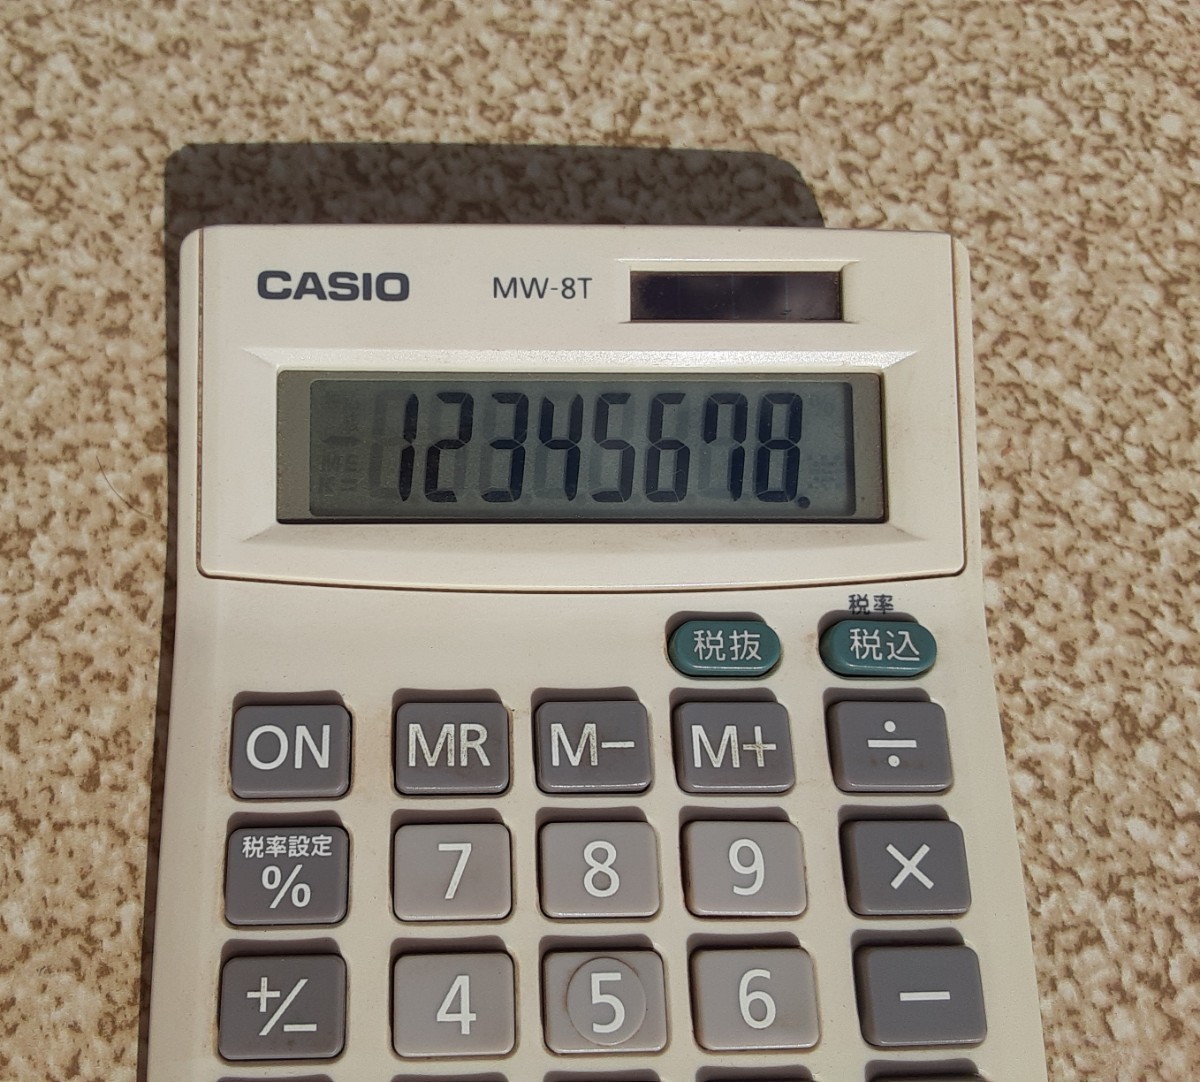 CASIO калькулятор MW-8T Casio Computer счет офисная работа сопутствующие товары Casio калькулятор retro смешанные товары коллекция солнечный 